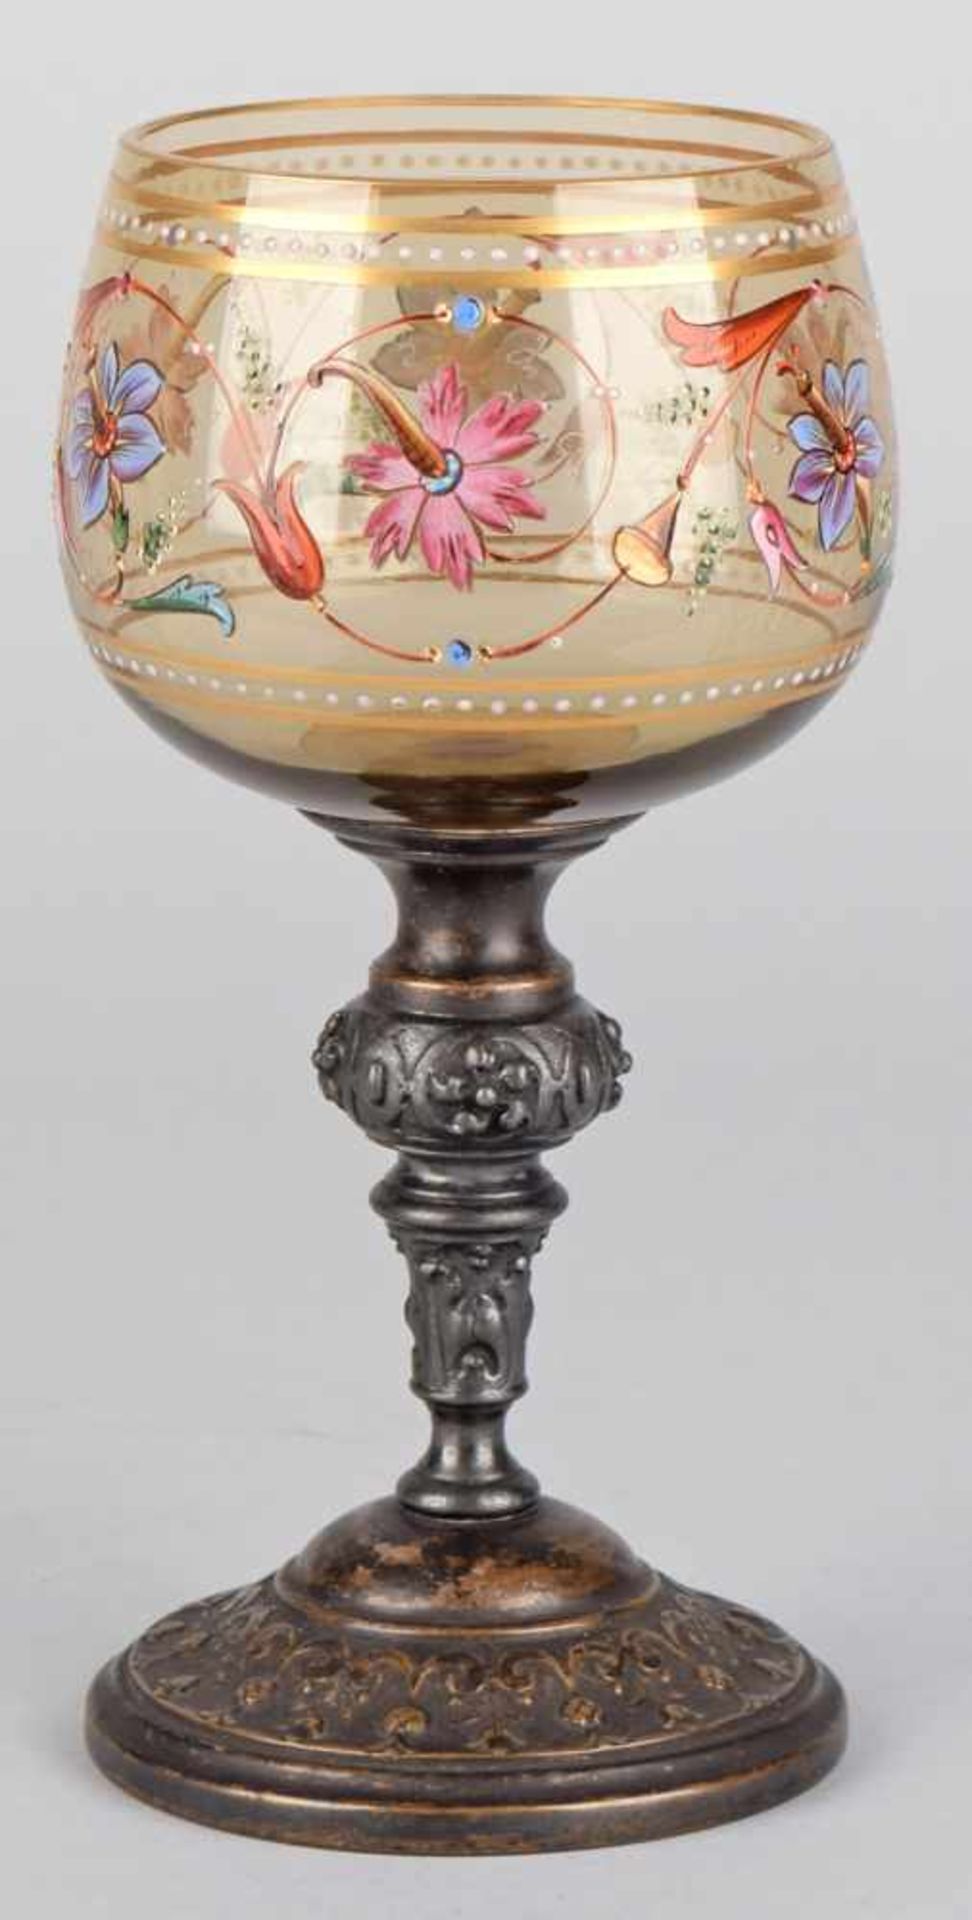 Historismus-Zierglas Stielglas mit kugeliger Kuppa in Braun-Grün, Blütenranke aufwendig von Hand - Bild 2 aus 2